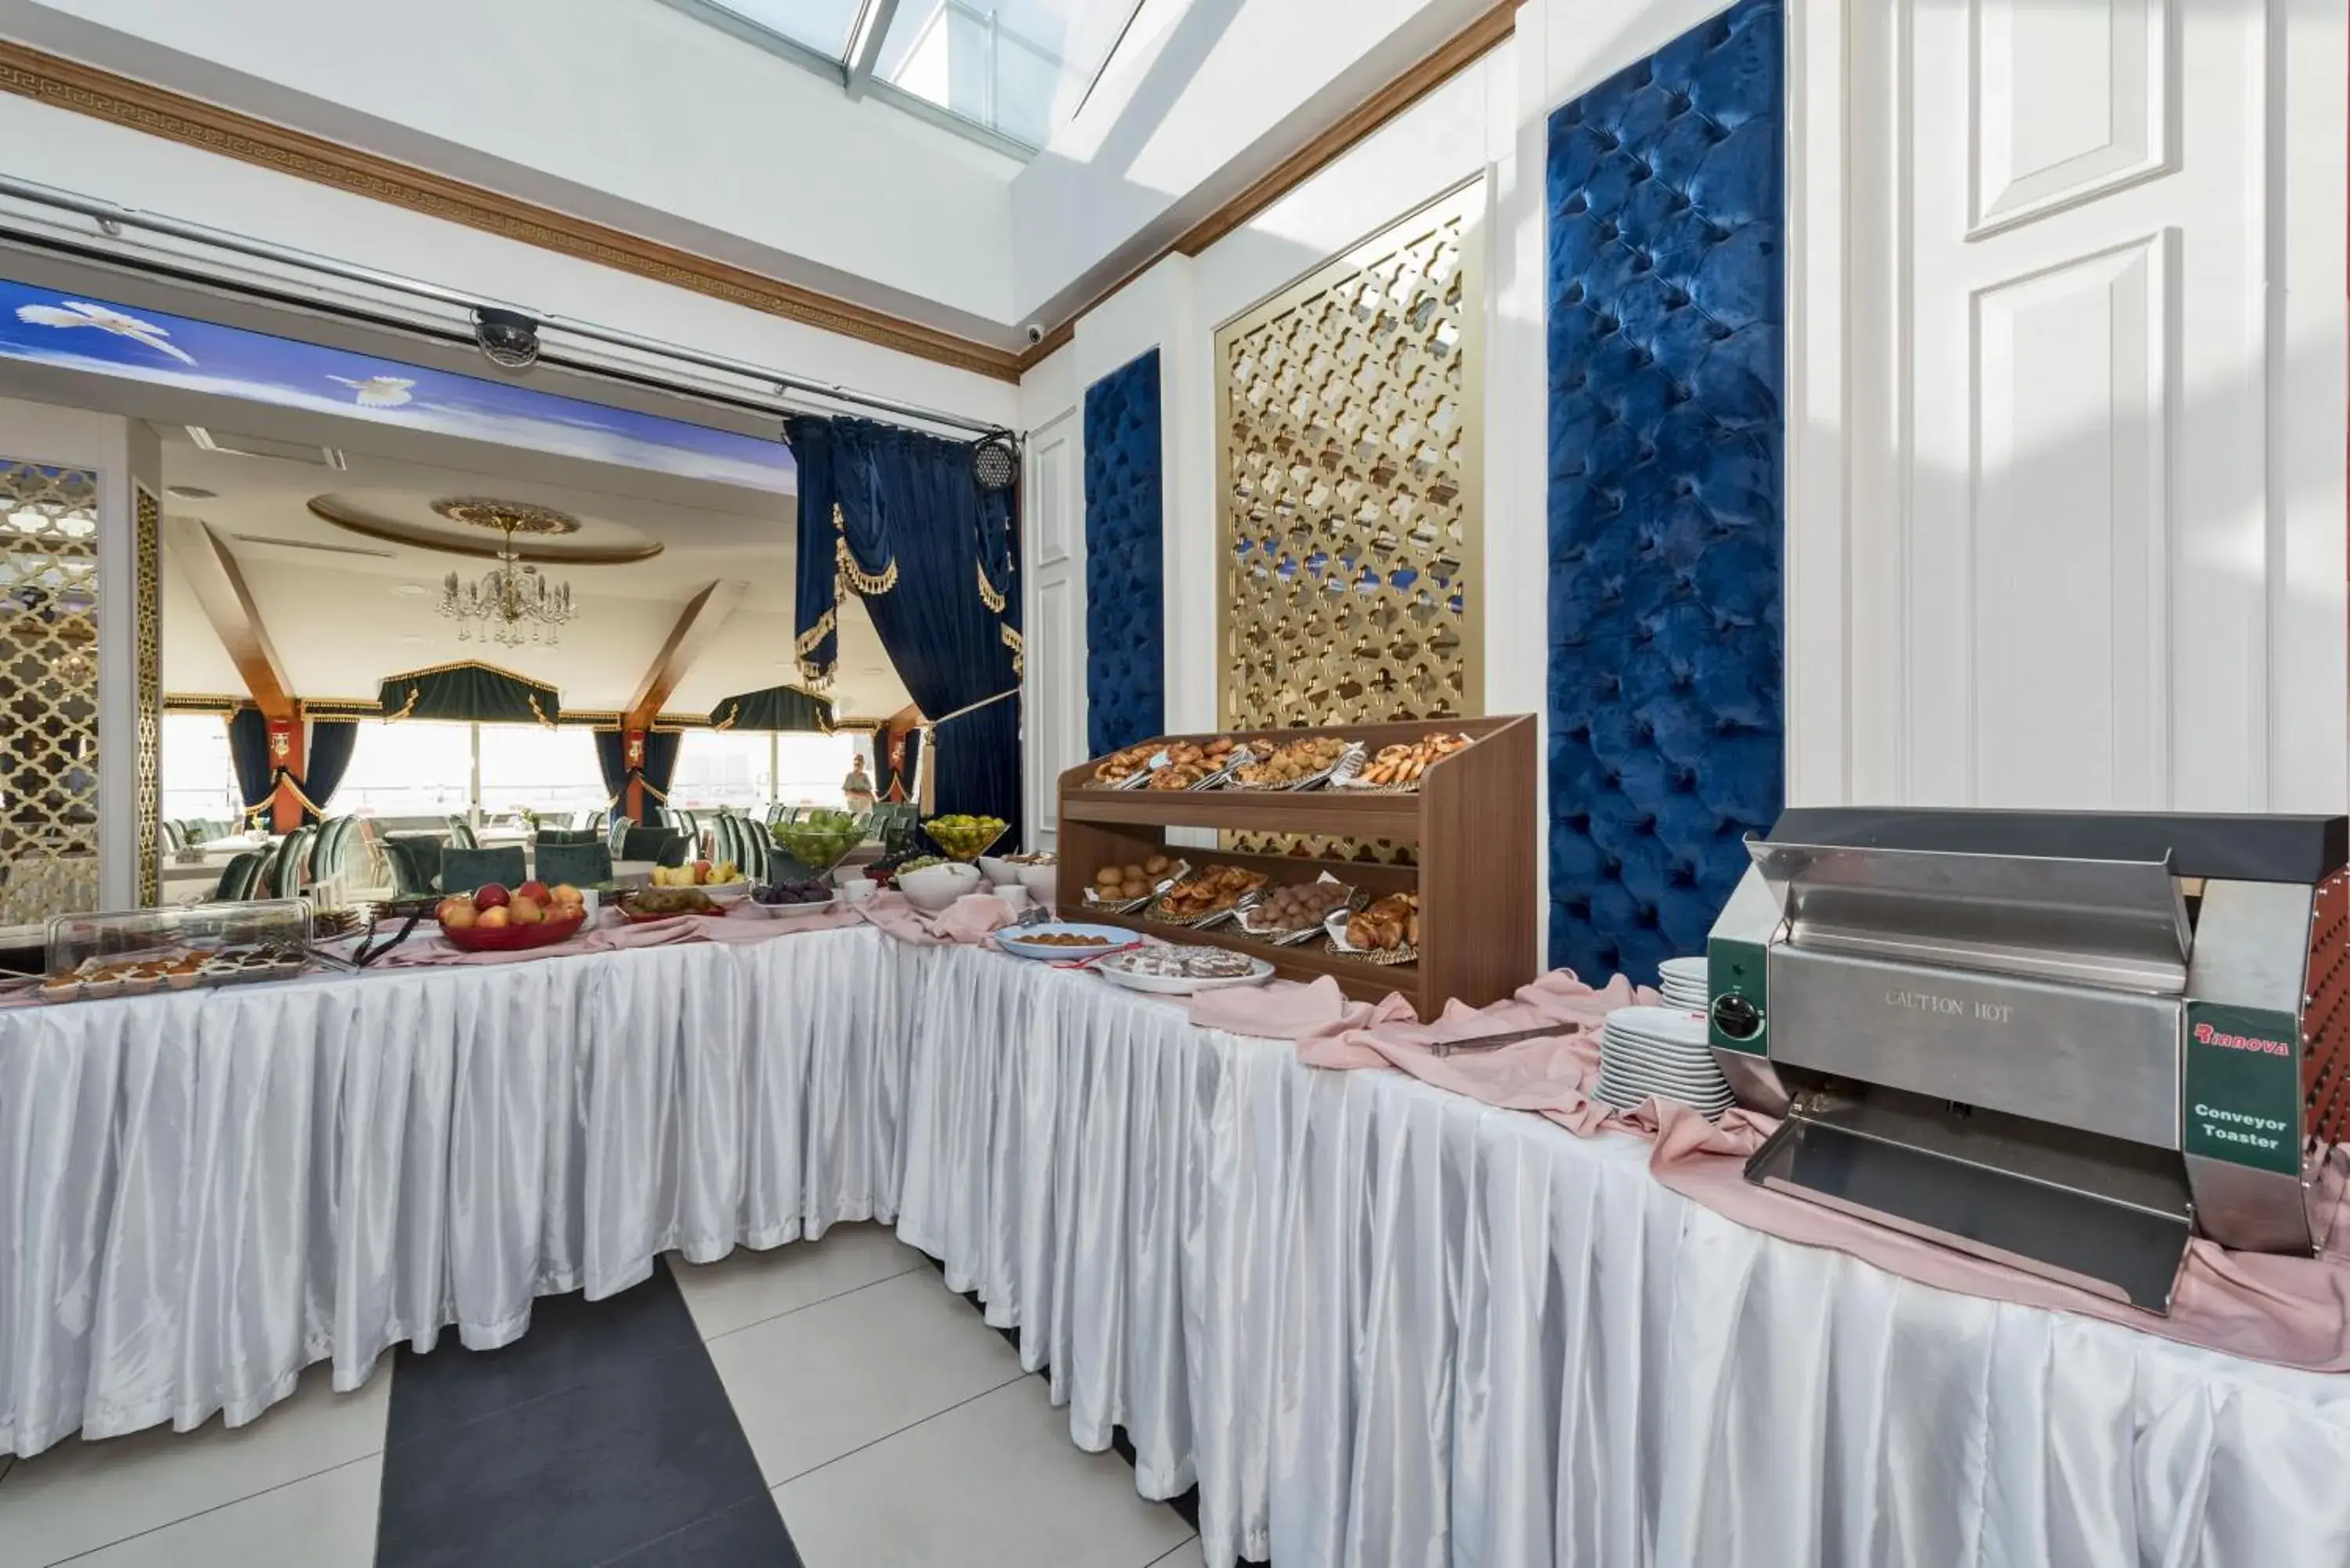 Buffet breakfast, Food in Marnas Hotels